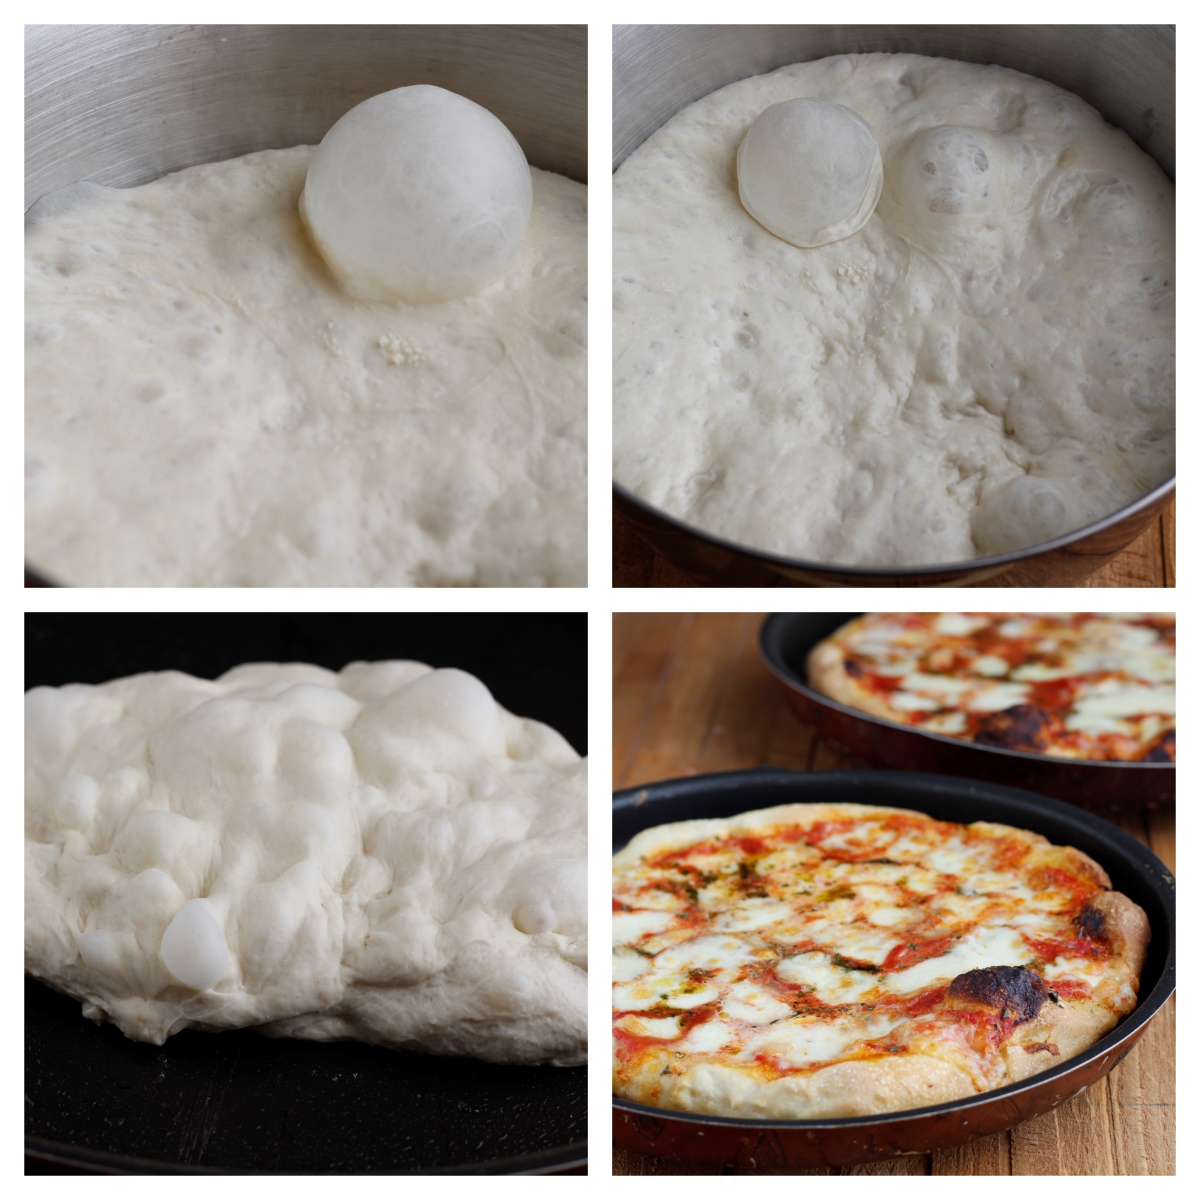 Impasto pizza con le bolle - lunga lievitazione - Lamiabuonaforchetta